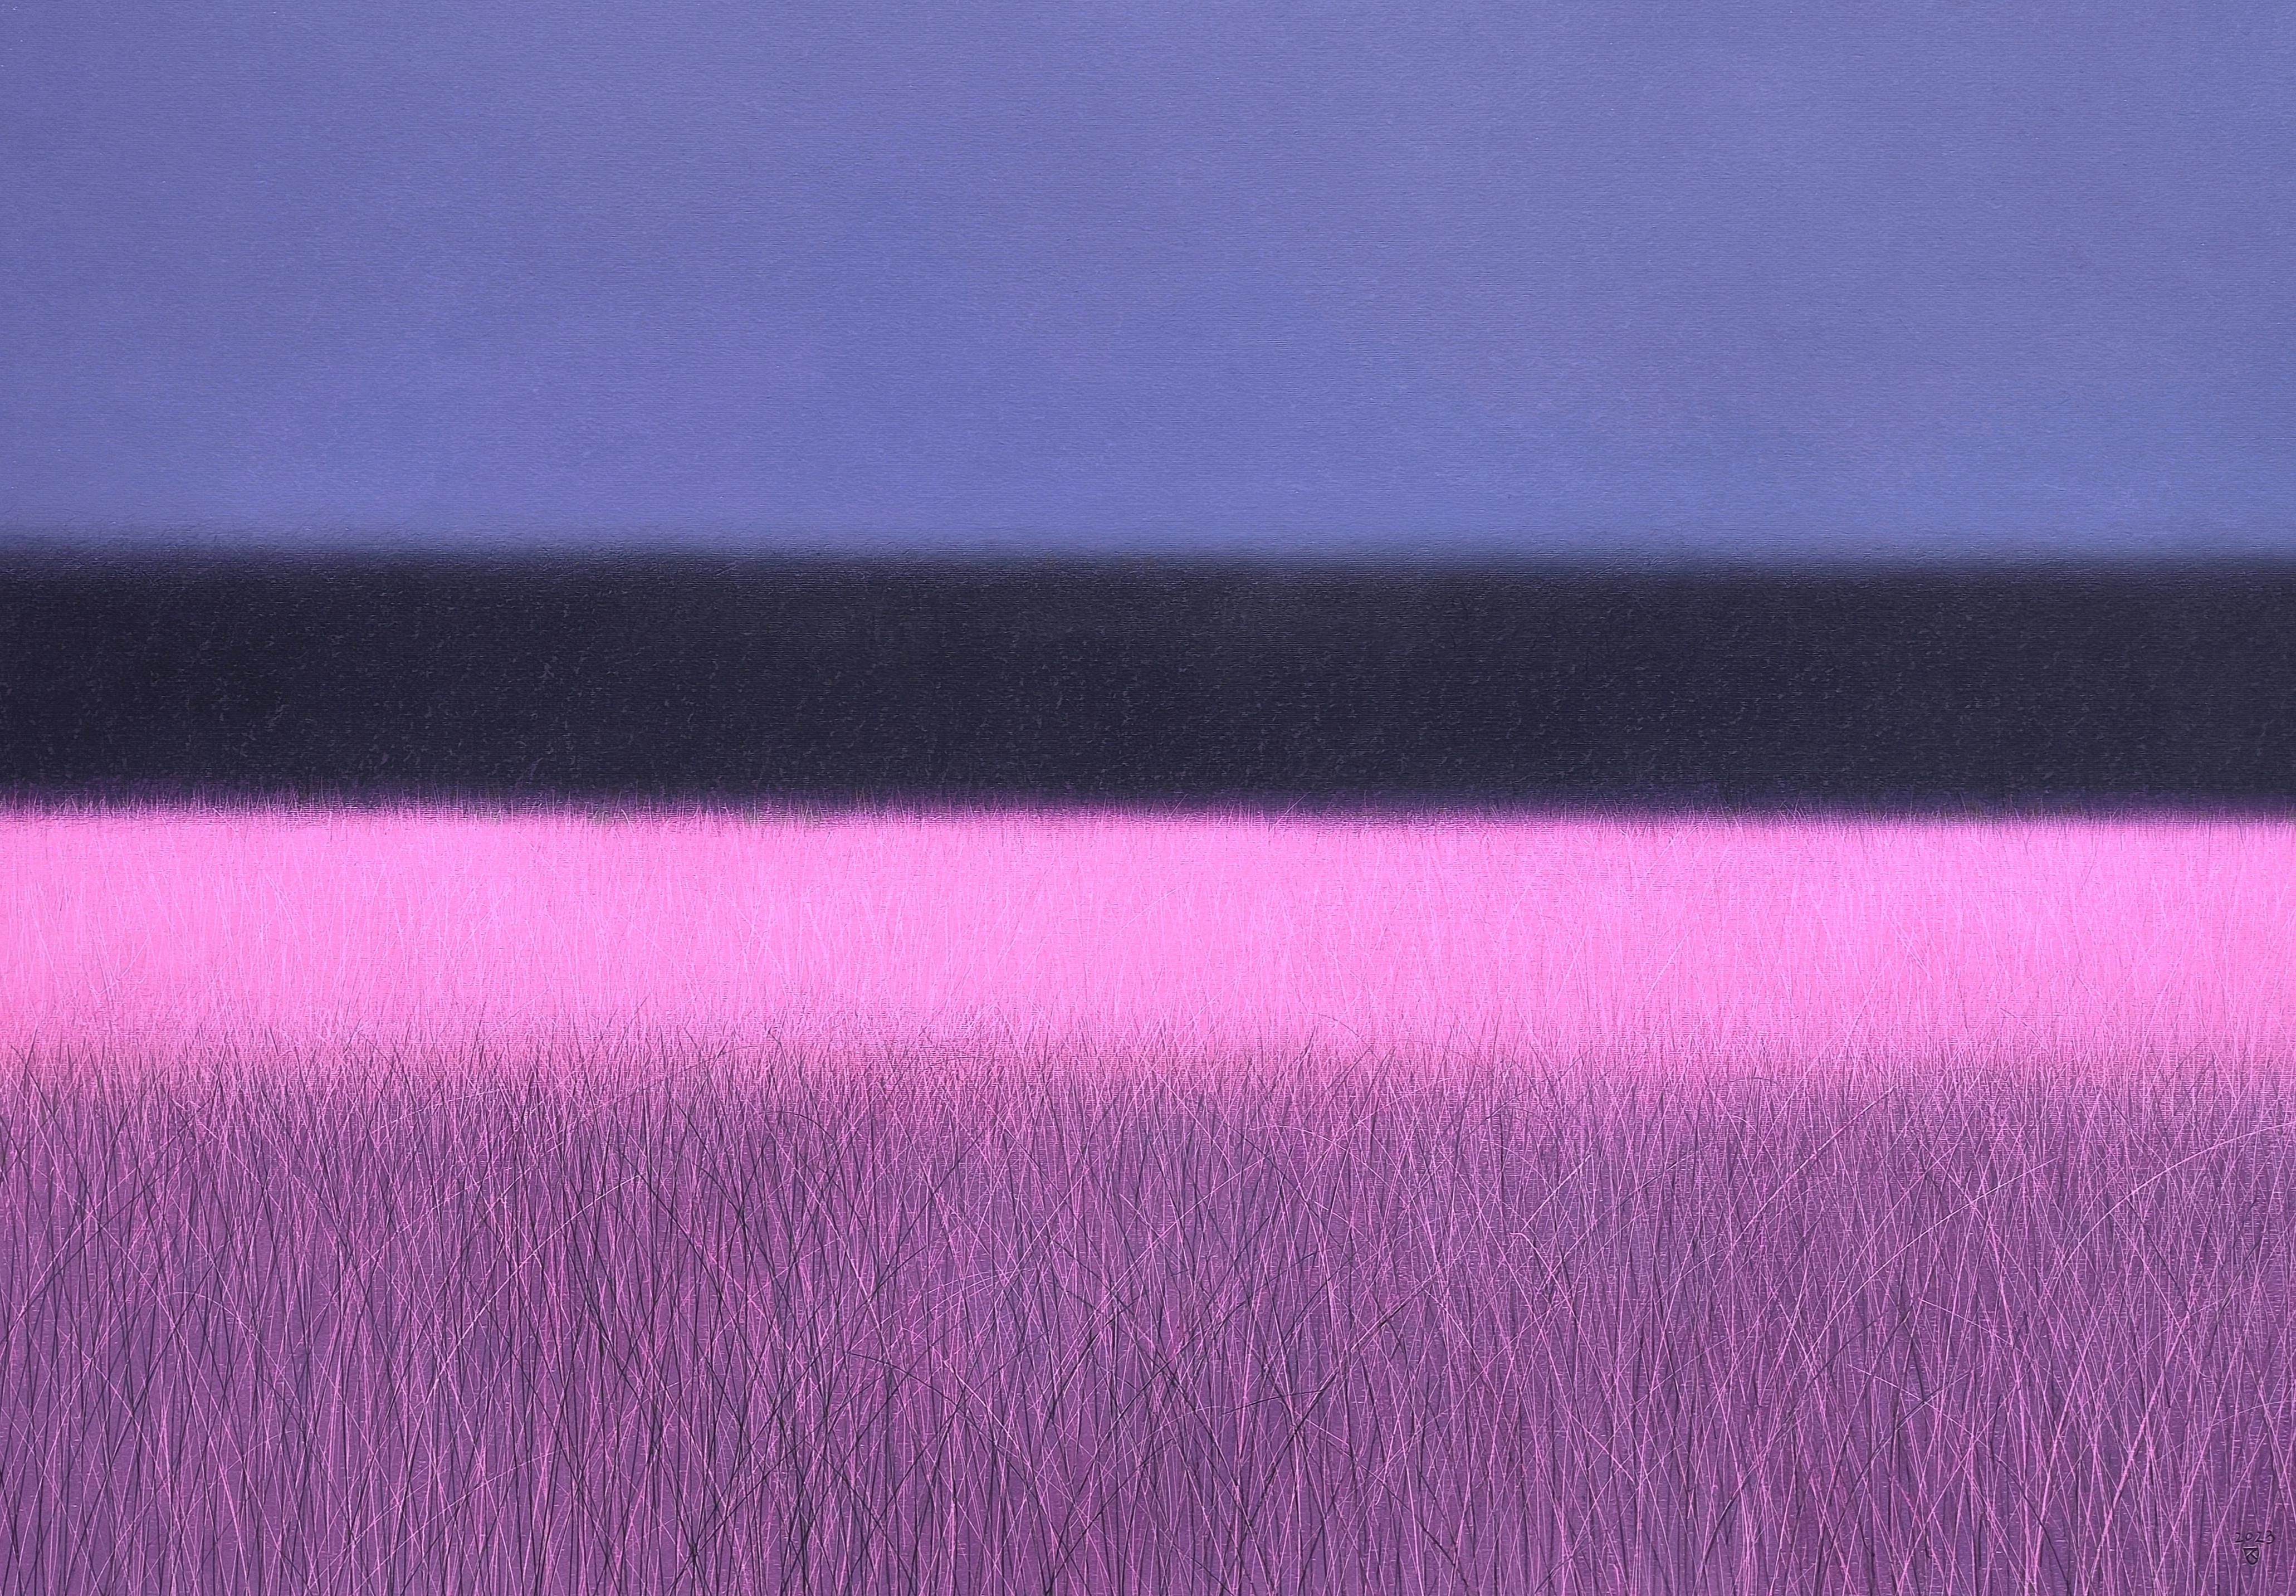 Janusz Kokot Landscape Painting - Pink Savannah  - Contemporary Landscape Oil Pastel Painting, Vibrant Colors